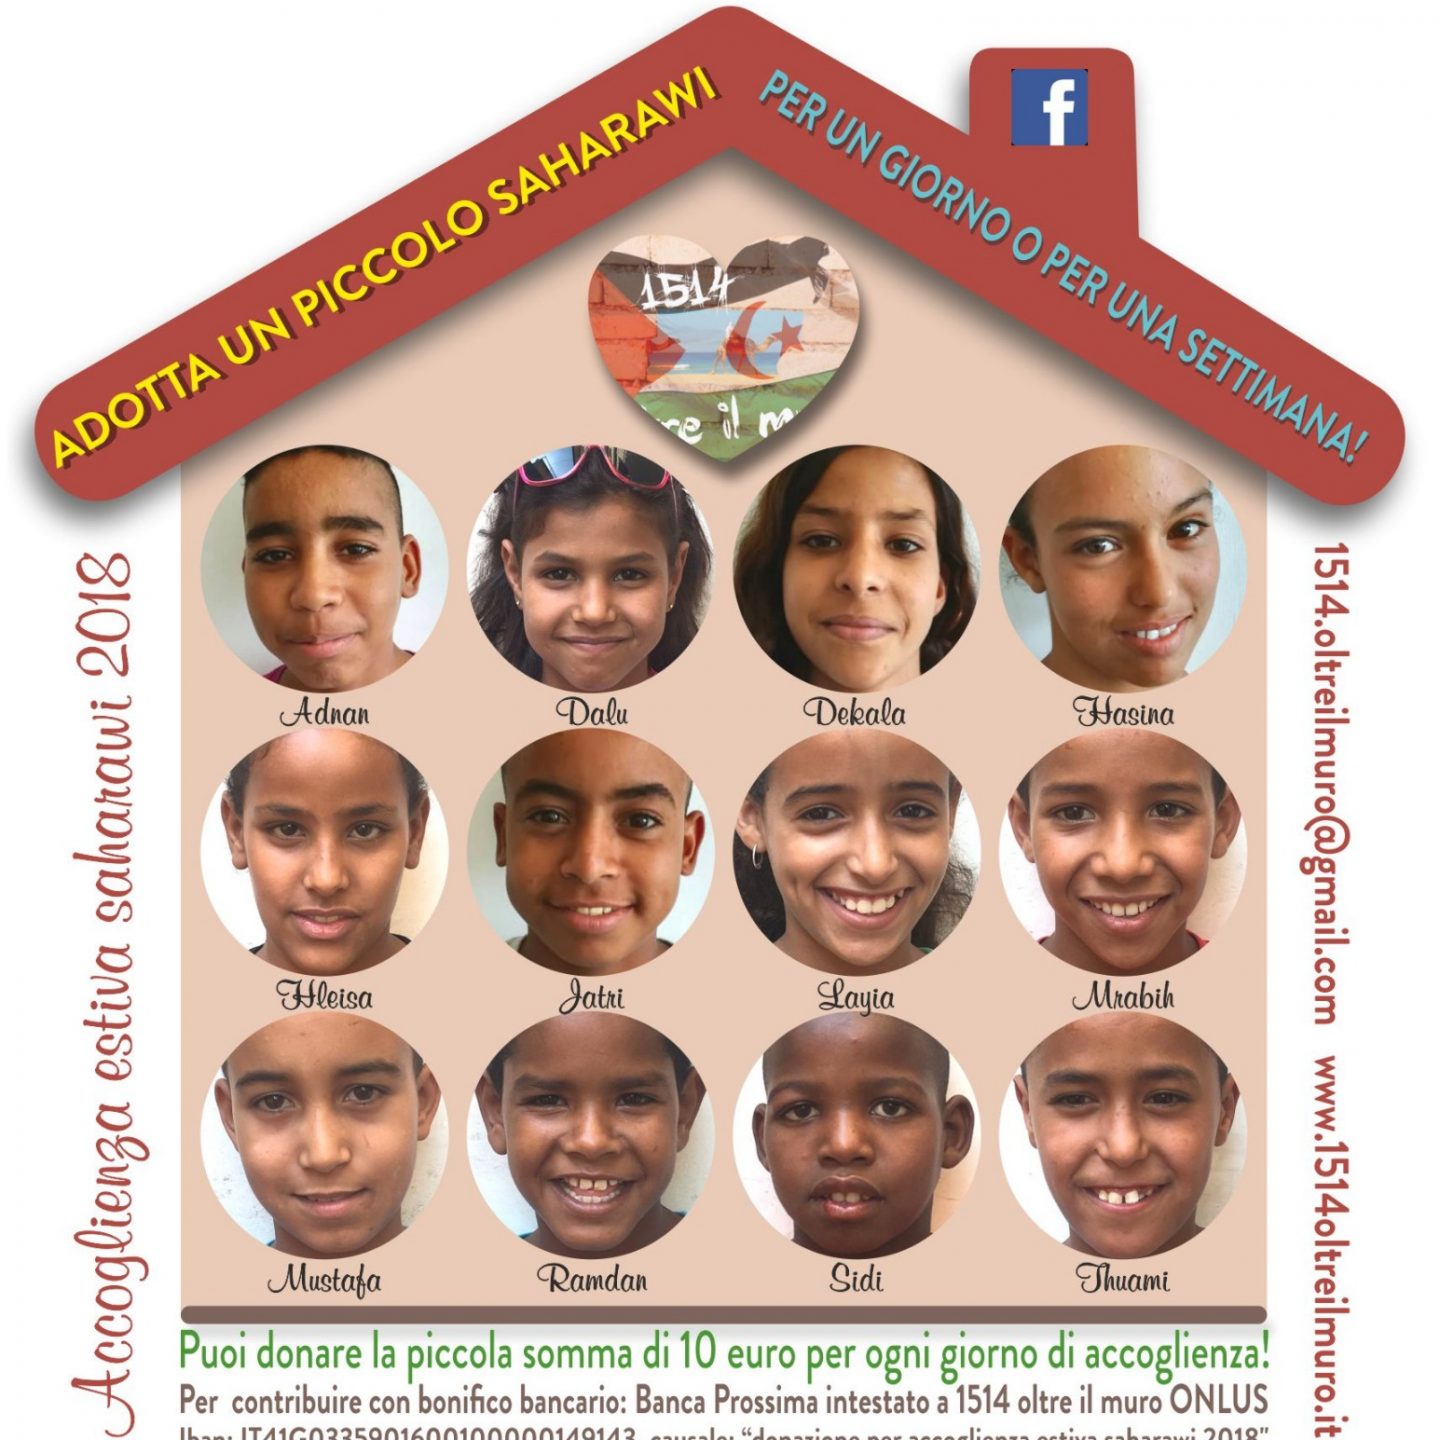 Adotta un bimbo Saharawi per il progetto accoglienza!